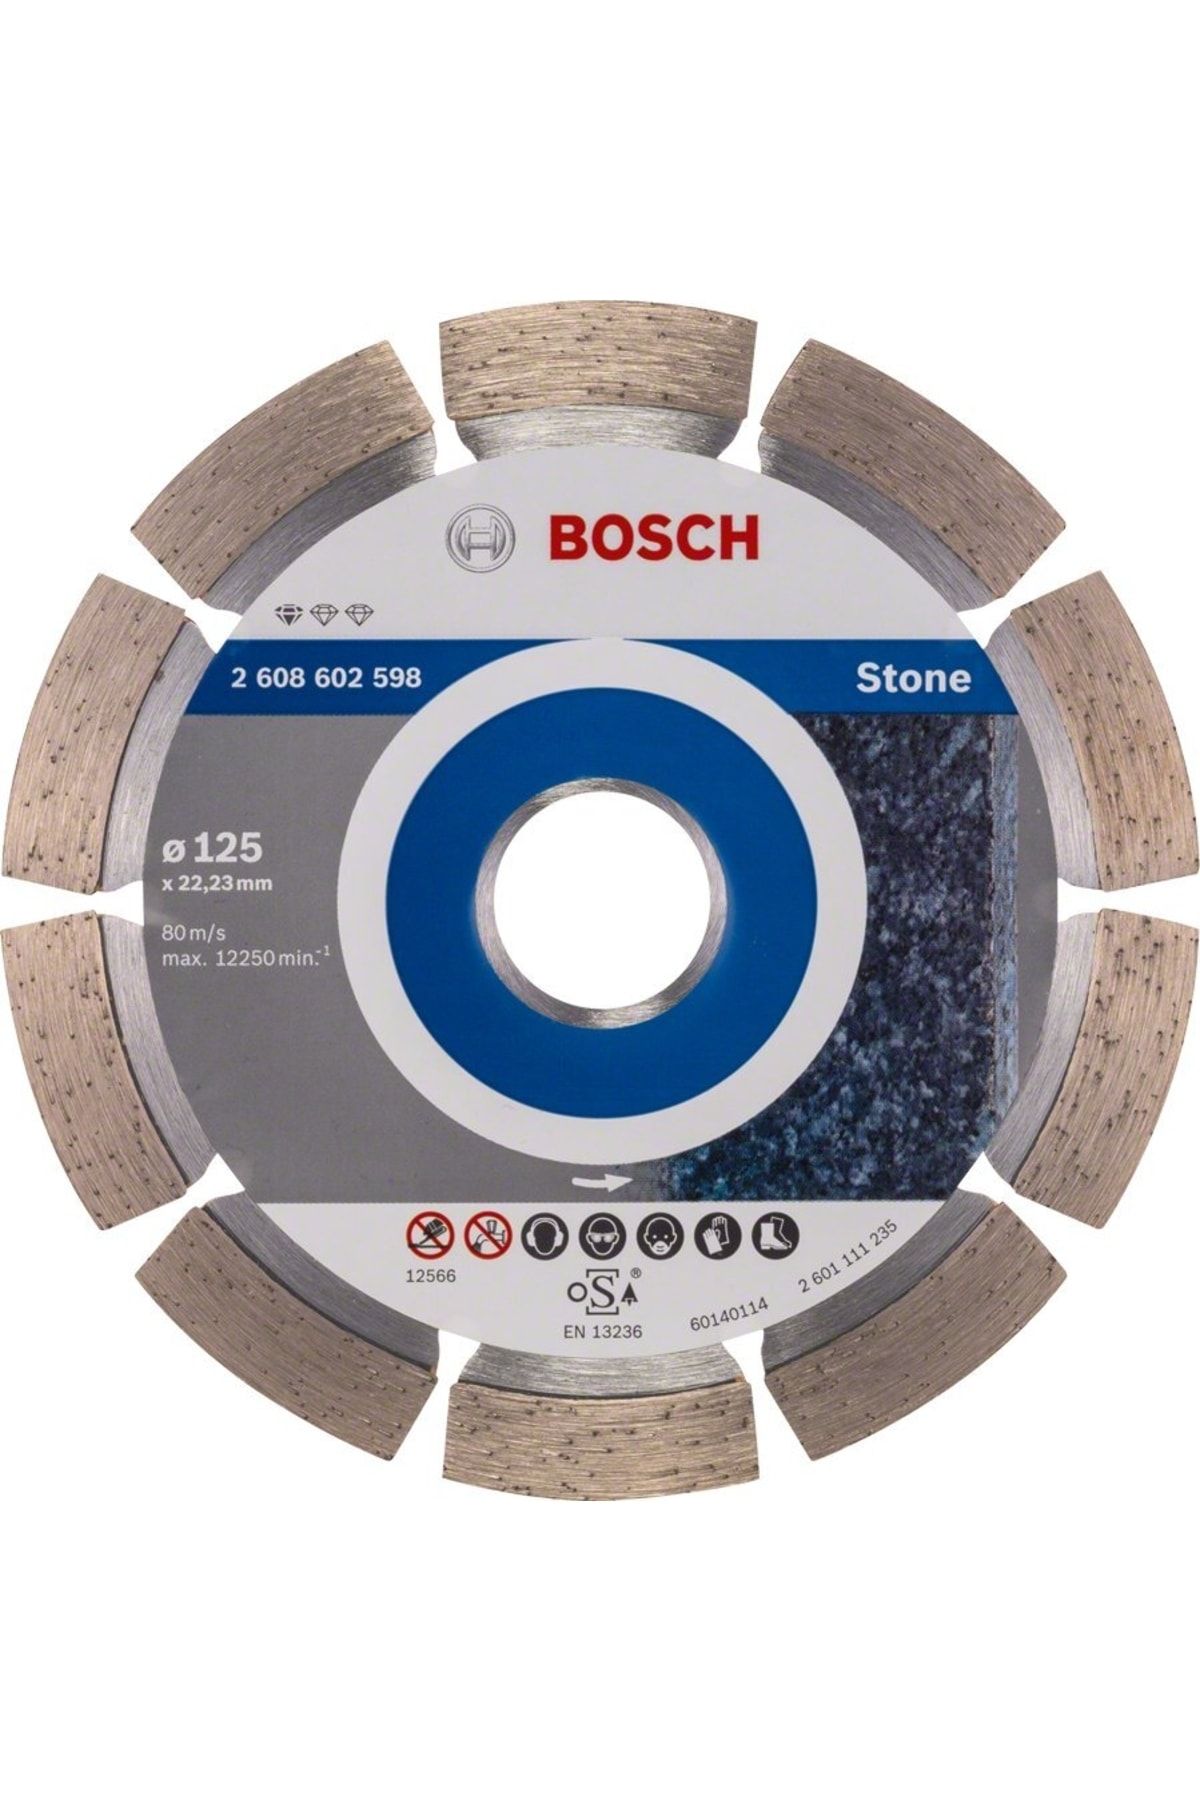 Bosch Standard For Stone 125 Mm Elmas Kesici Disk - 2608602598